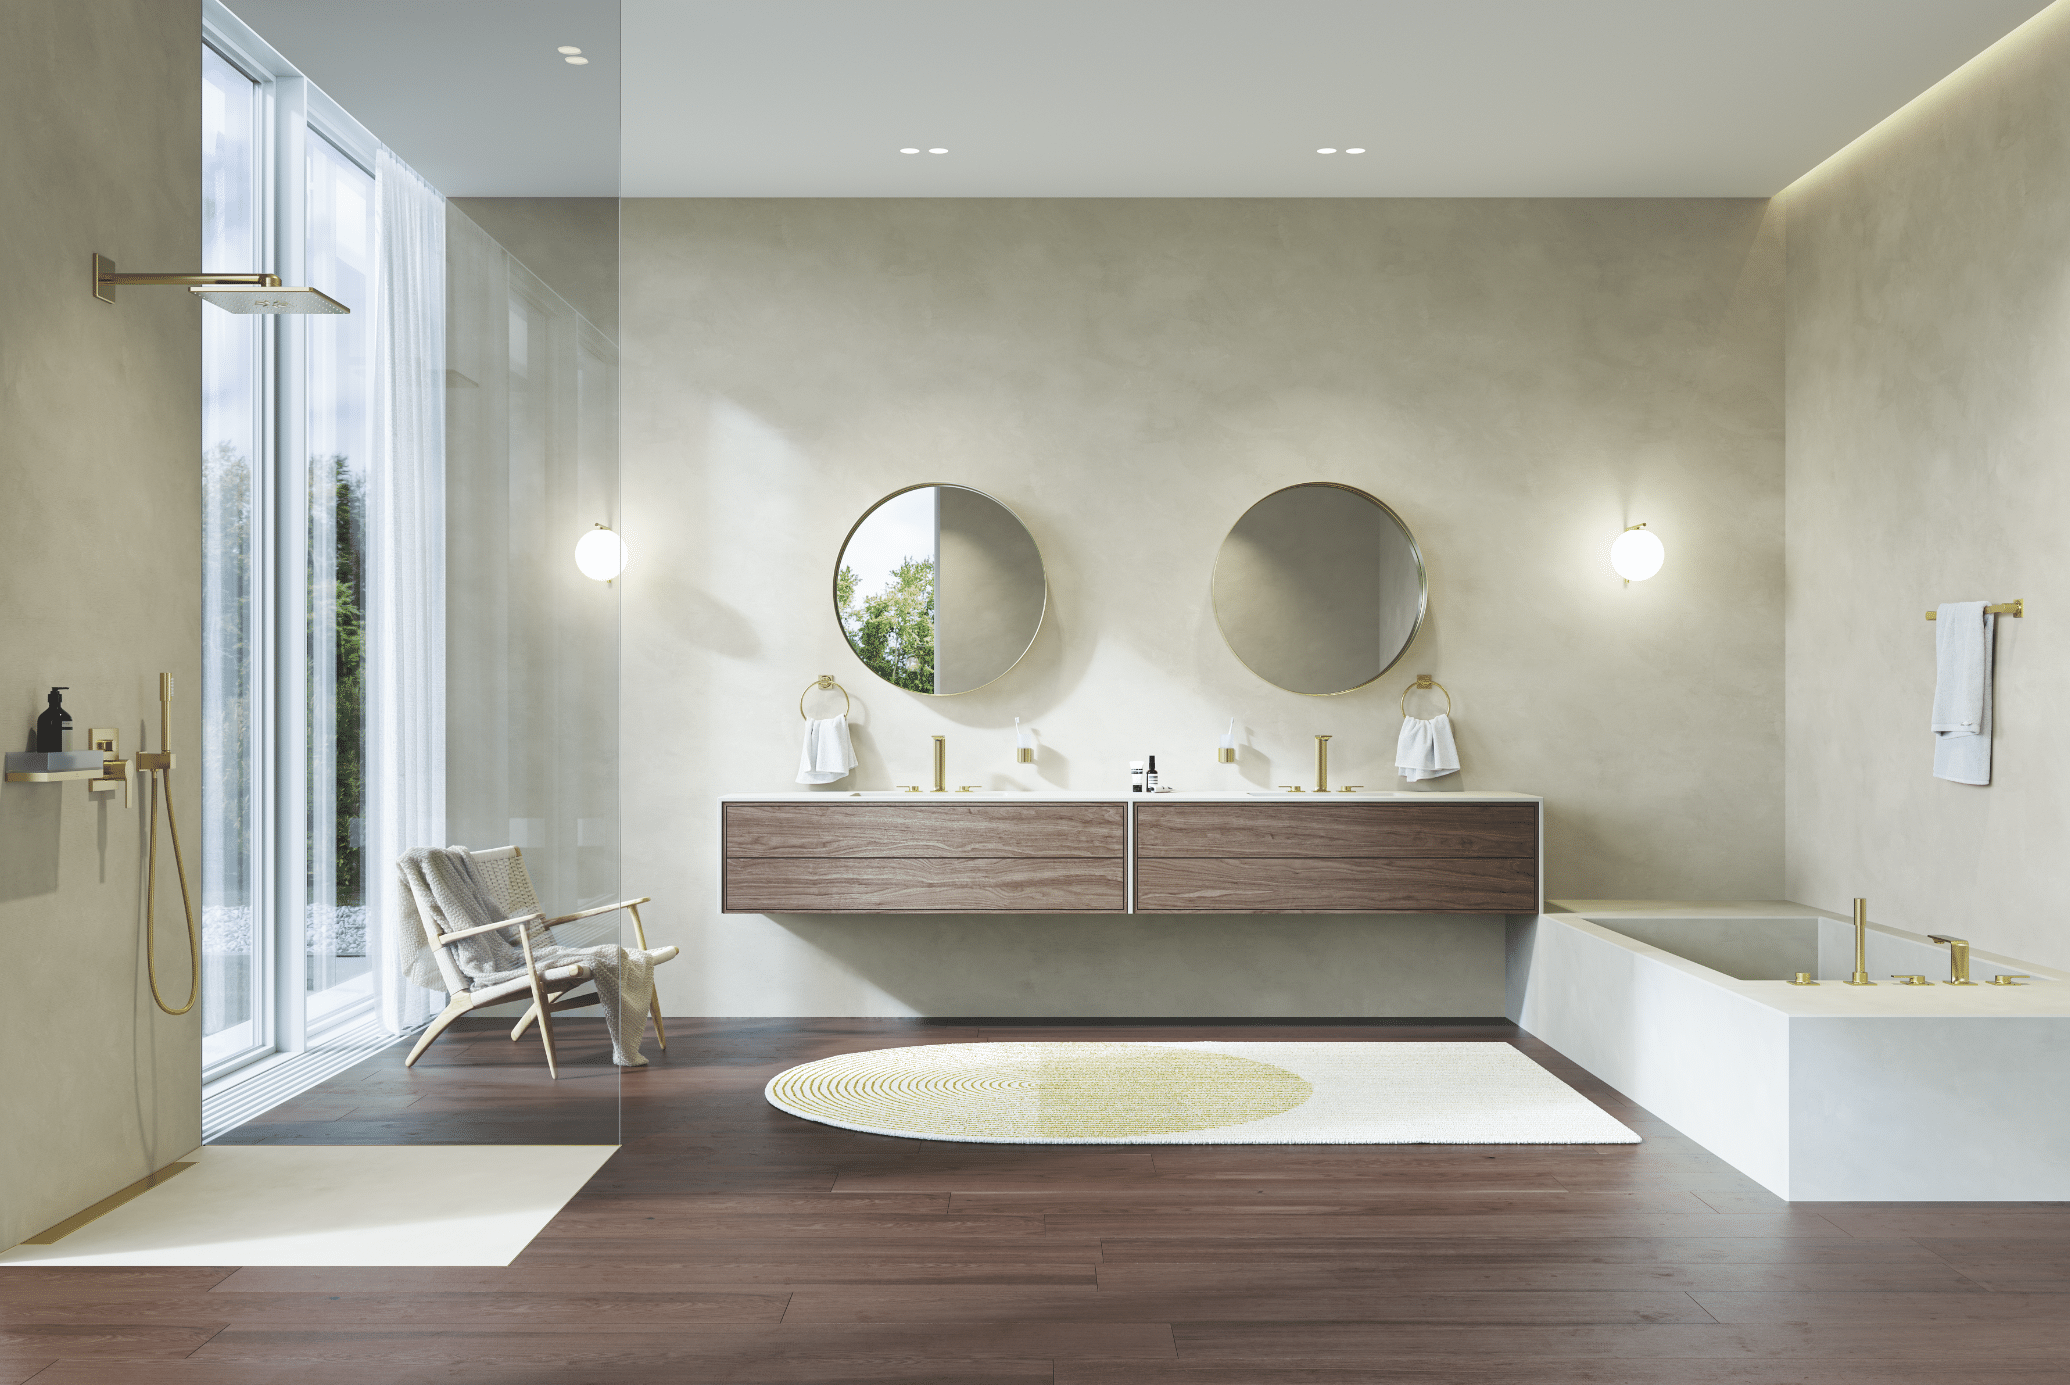 Grohe zeigt ein helles Badezimmer mit Doppelwaschtisch aus Holz mit runden Spiegeln, eine weisse Badewanne mit goldenen Armaturen und einer Dusche mit Glaswand.